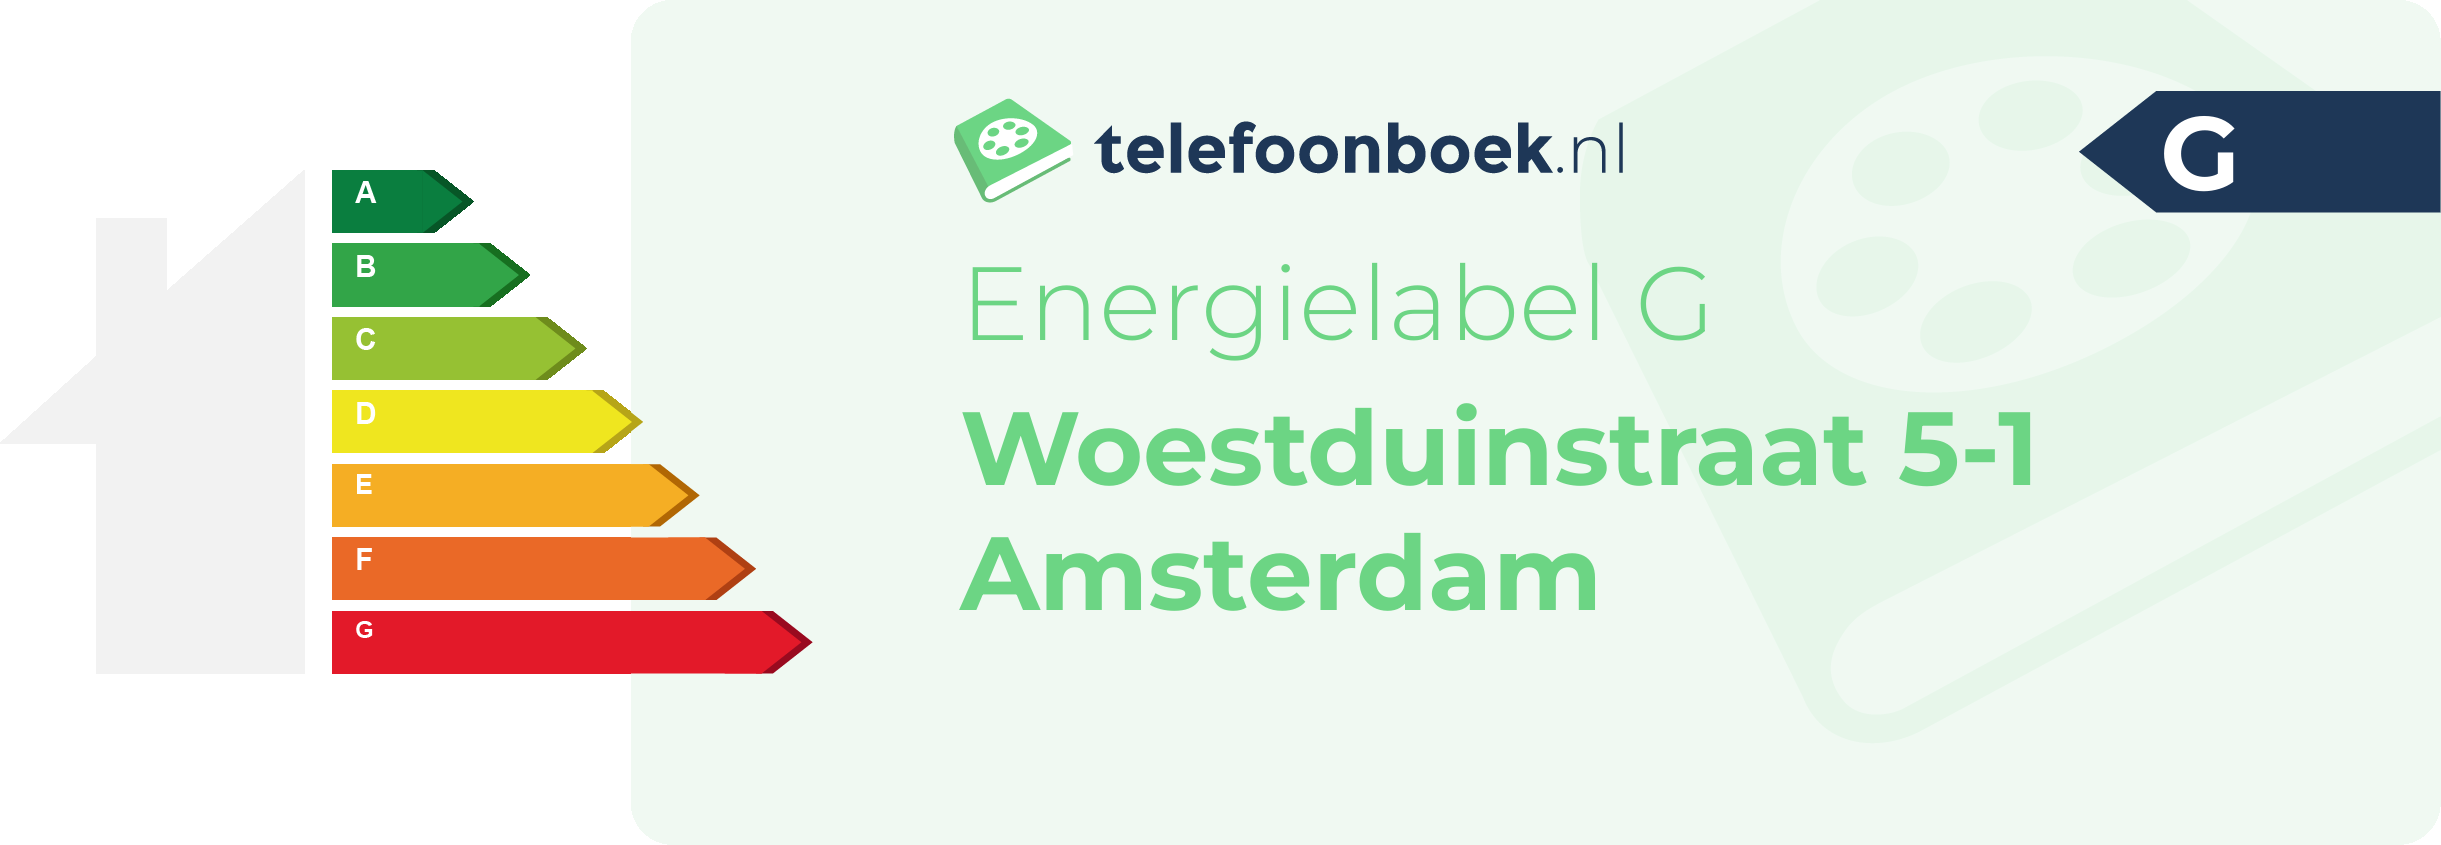 Energielabel Woestduinstraat 5-1 Amsterdam